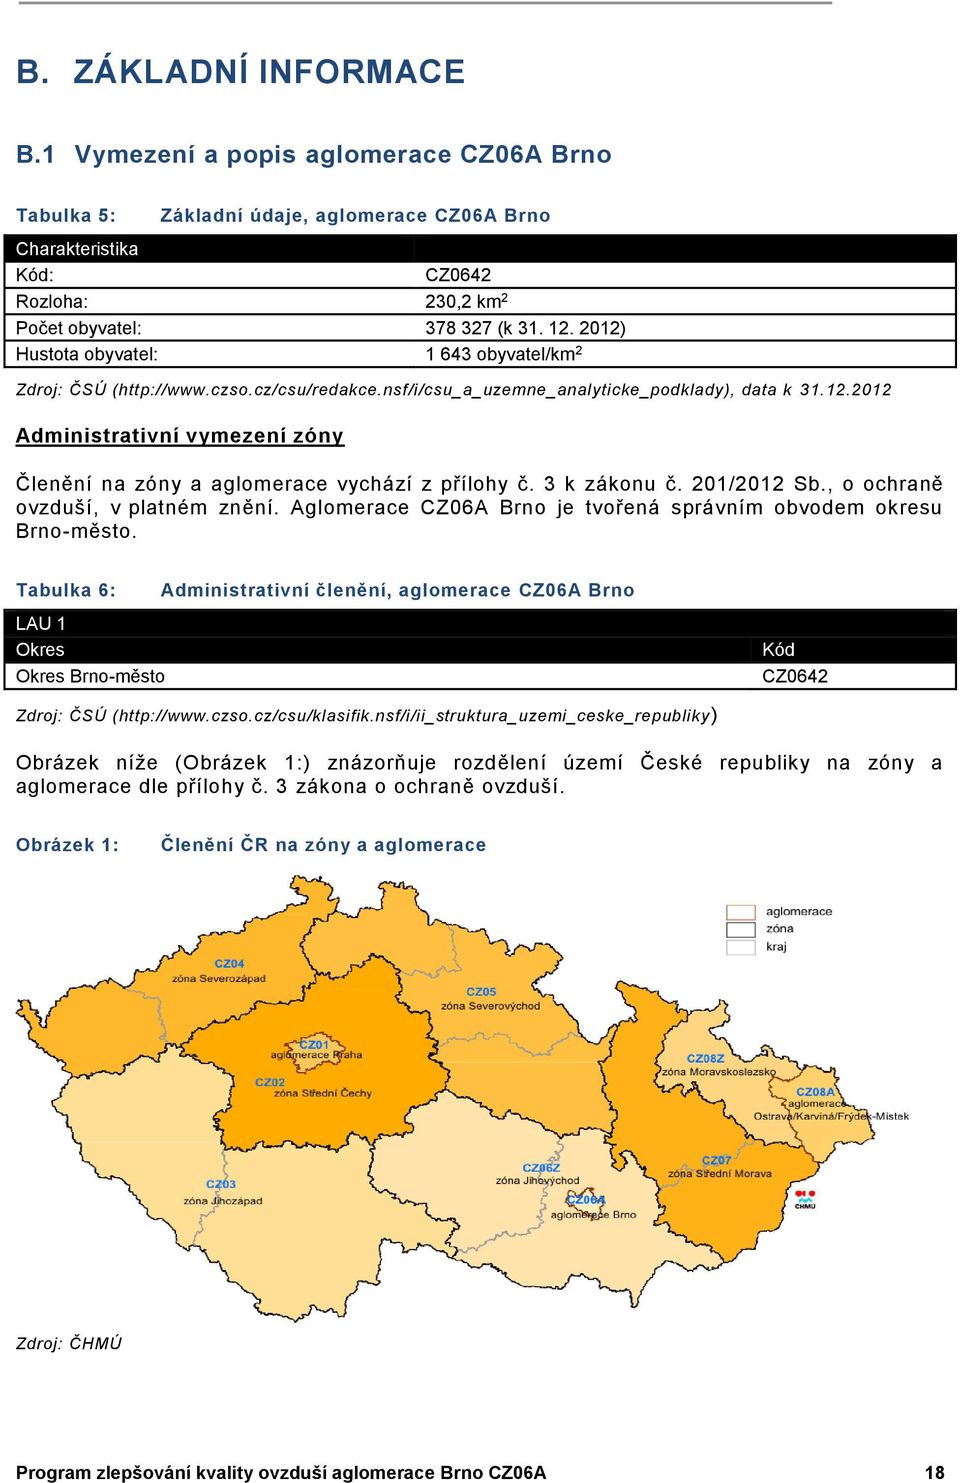 3 k zákonu č. 201/2012 Sb., o ochraně ovzduší, v platném znění. Aglomerace CZ06A Brno je tvořená správním obvodem okresu Brno-město.